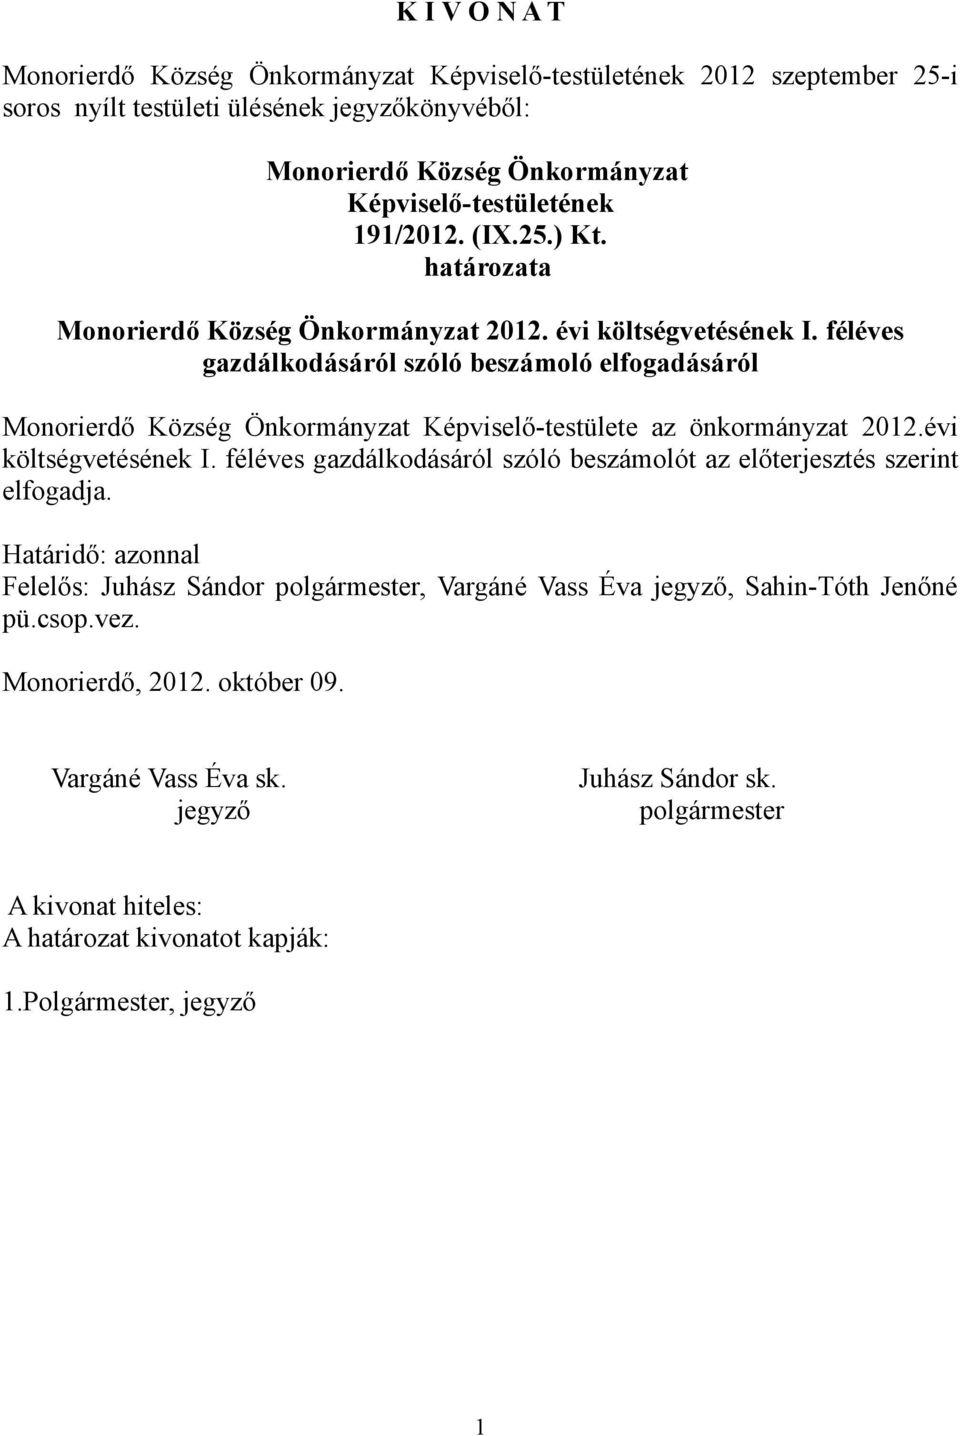 féléves gazdálkodásáról szóló beszámoló elfogadásáról Képviselő-testülete az önkormányzat 2012.